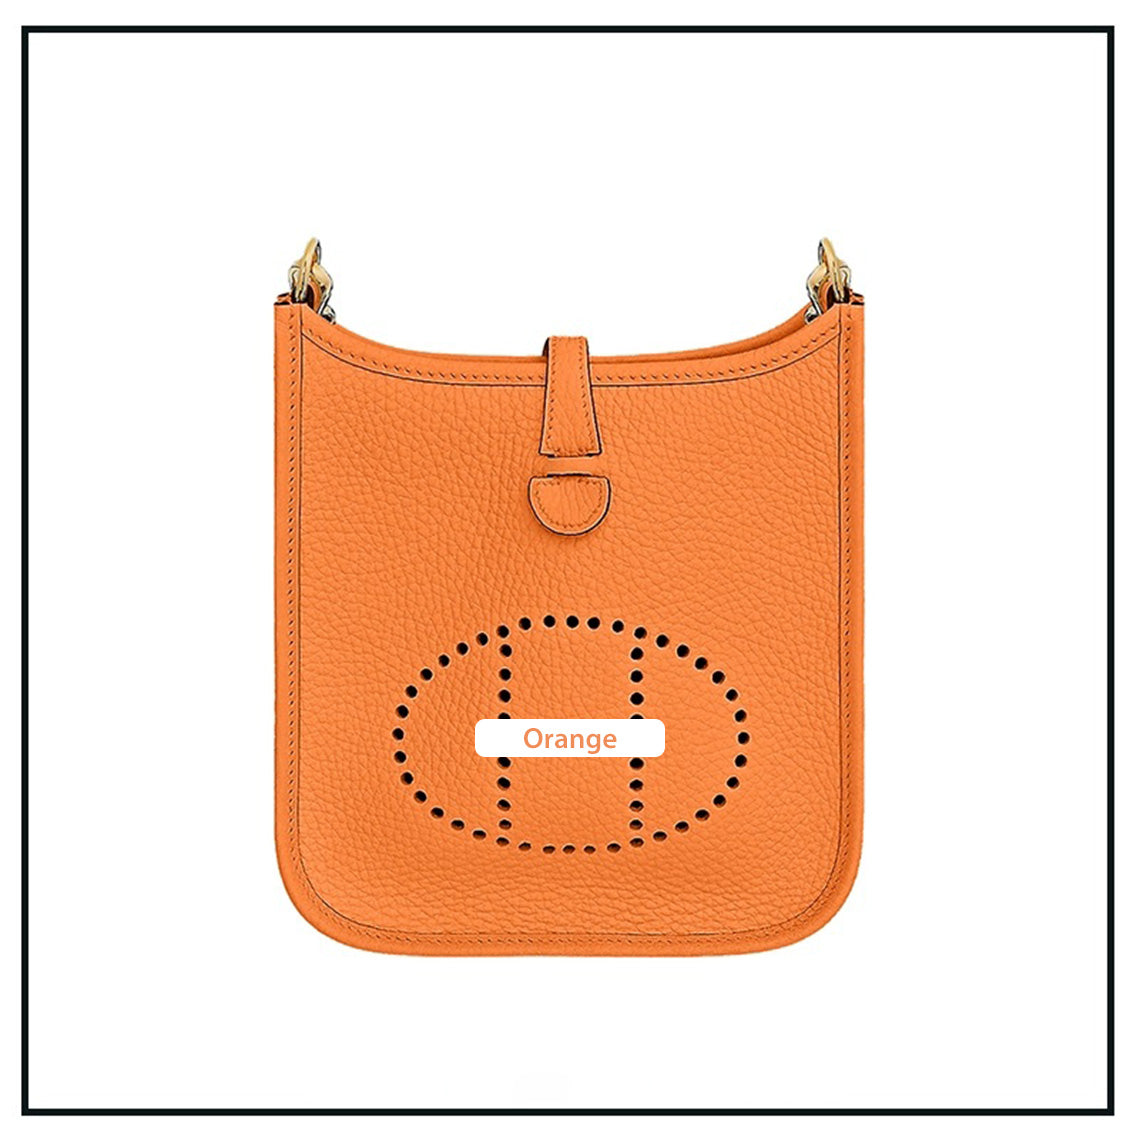 Orange Evelyne Bag | DIY Hermes Bag Leather Kit - Mini Size | POPSEWING®